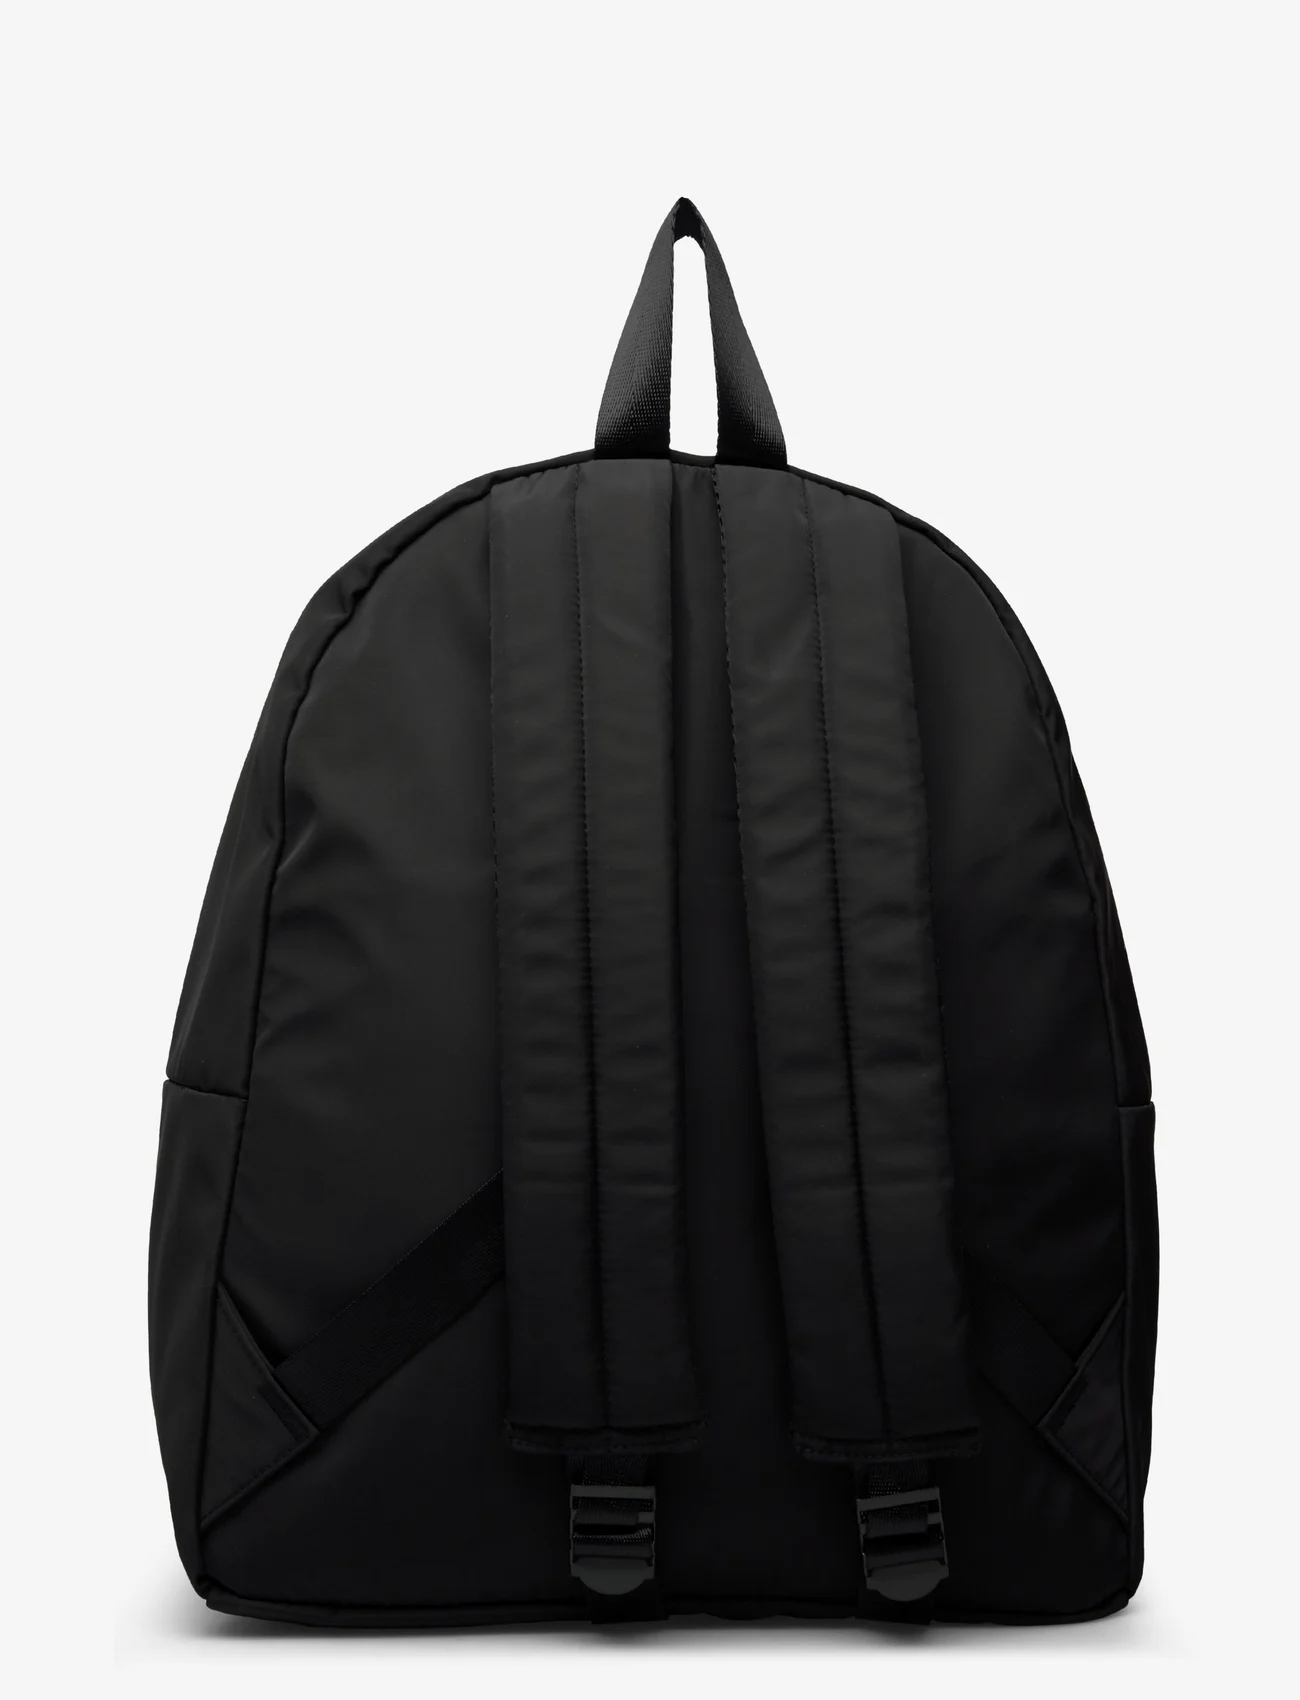 Taikan - Hornet-Black - backpacks - black - 1